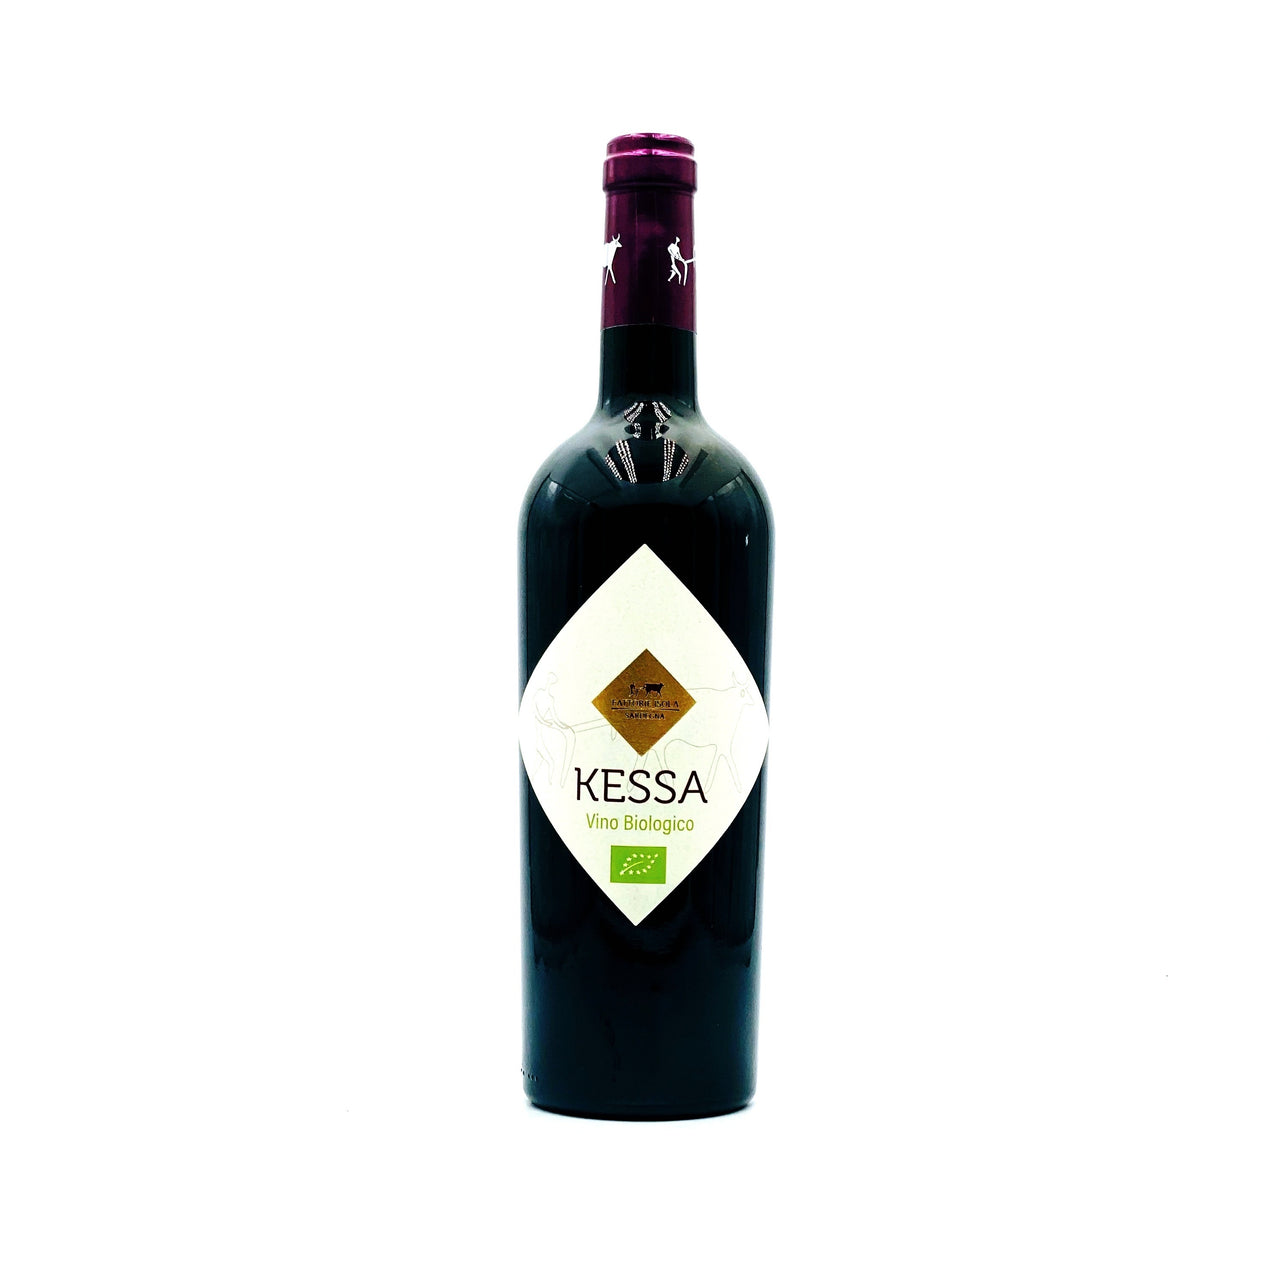 Kessa Vino rosso Bio - Rosato Vini